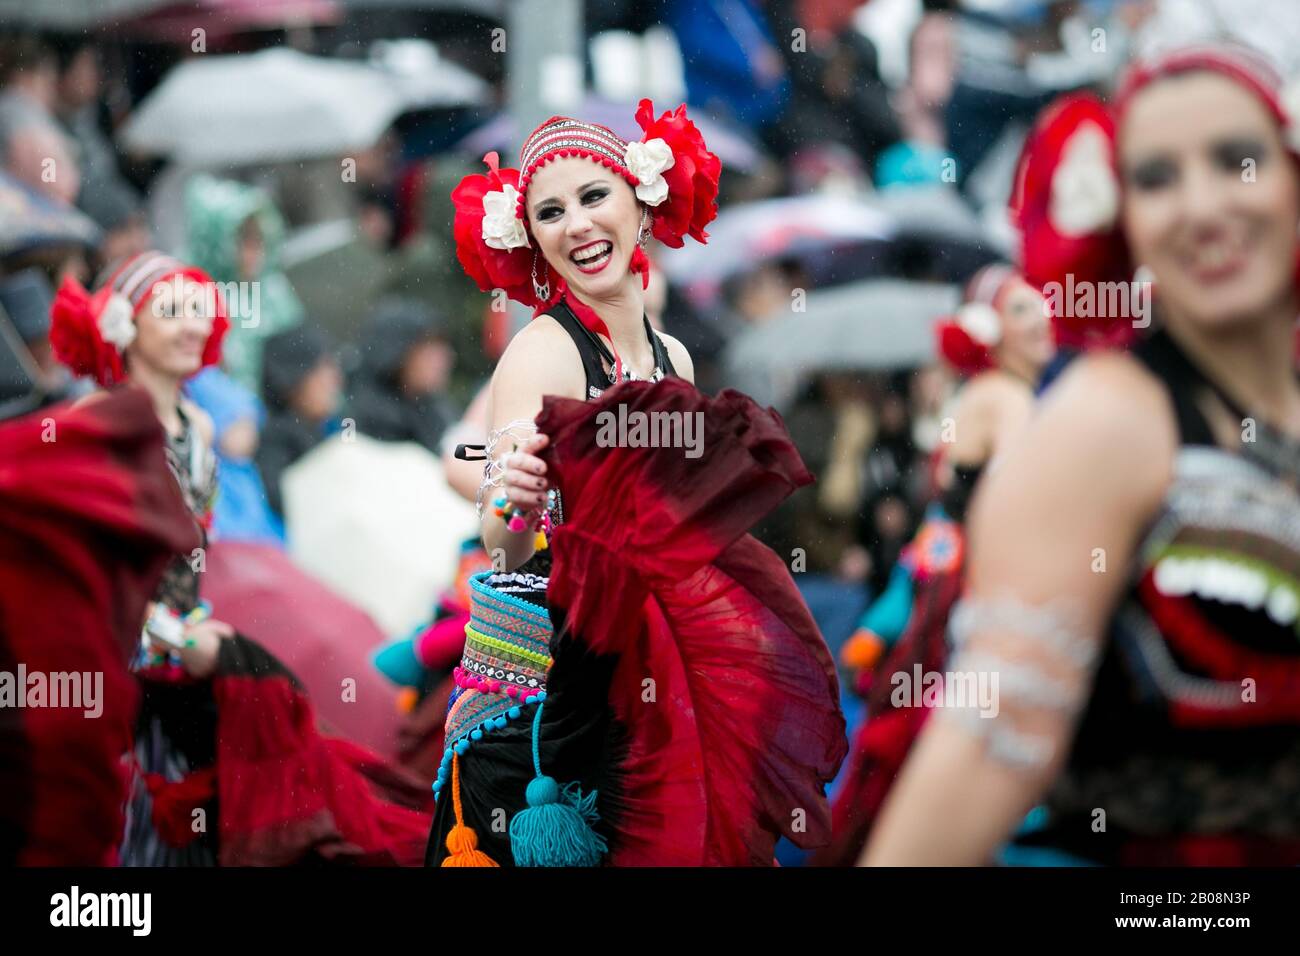 Carnaval de Ovar, Portugal. Desfile de cor e alegria Stock Photo